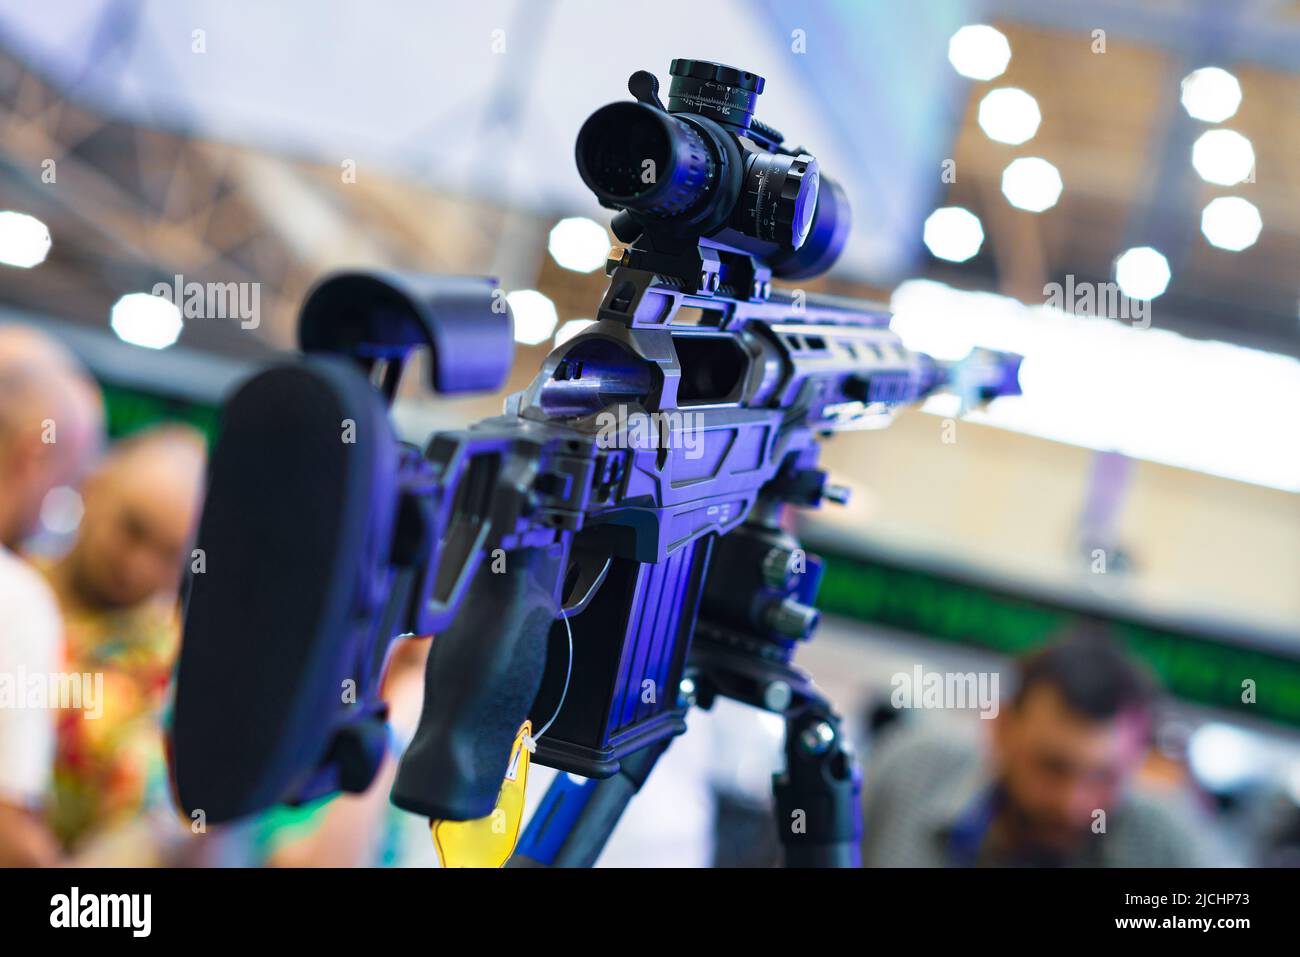 Automatisches Gewehr mit Teleskopausblick. Stockfoto